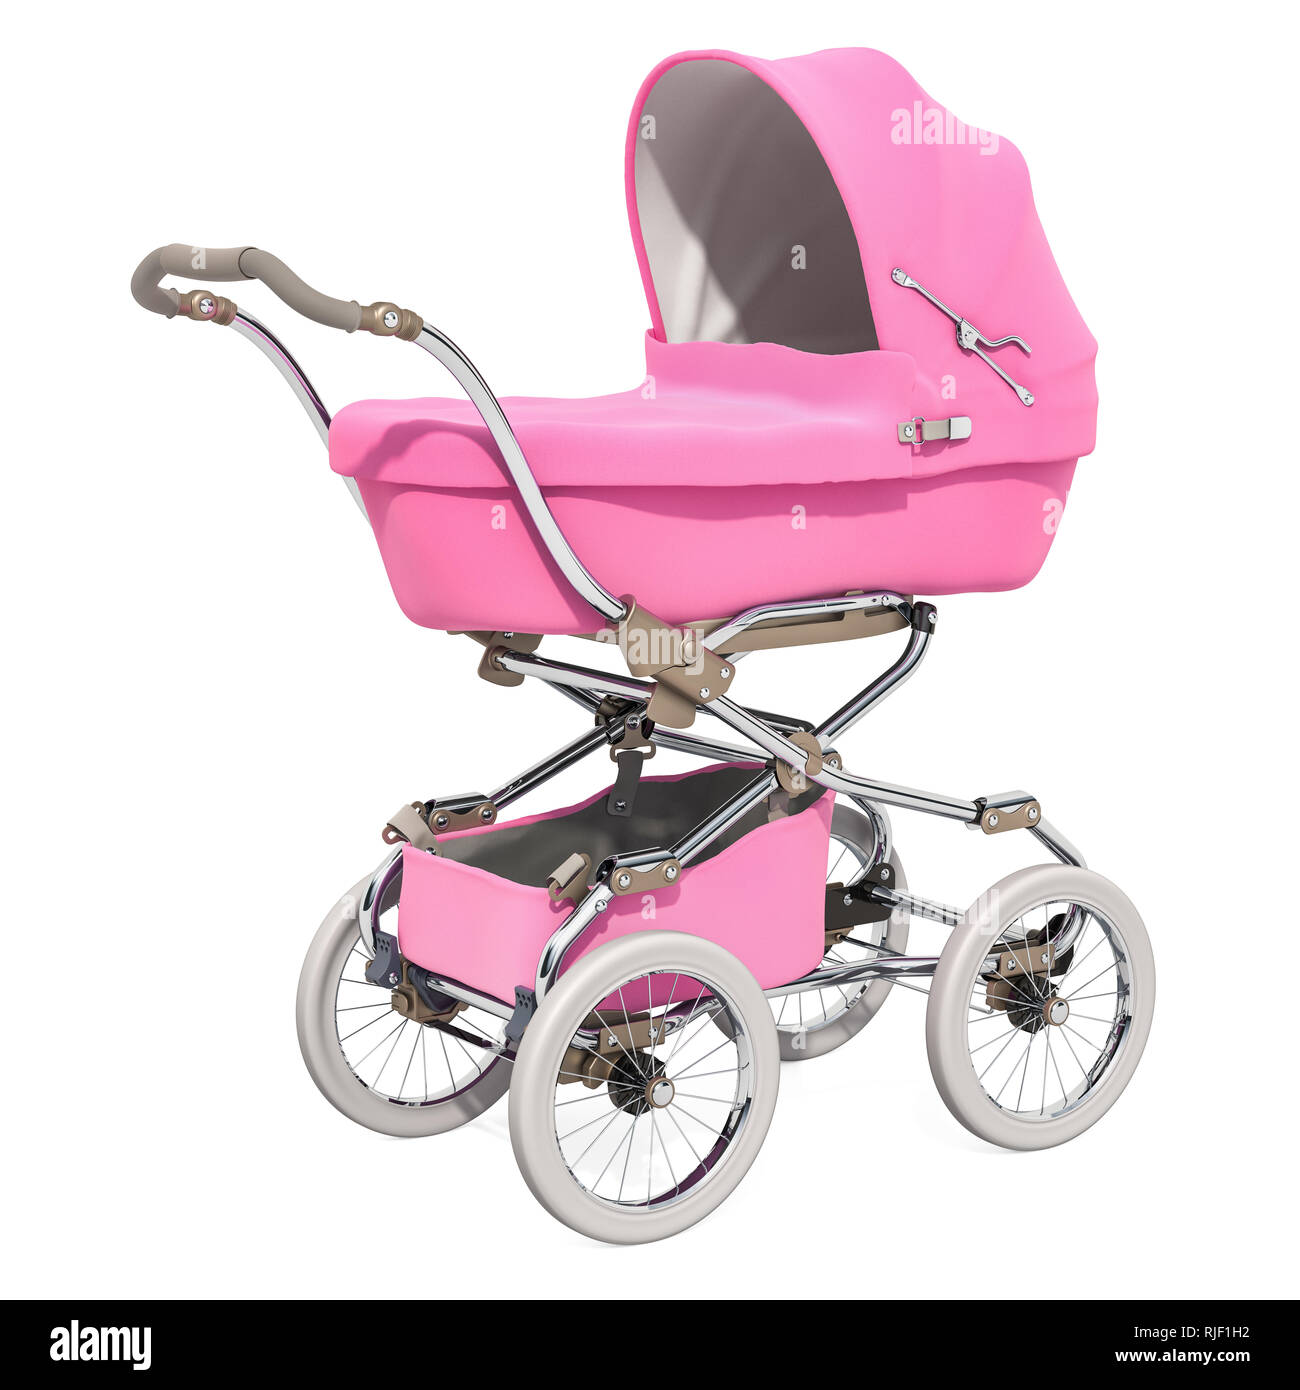 pink prams for babies